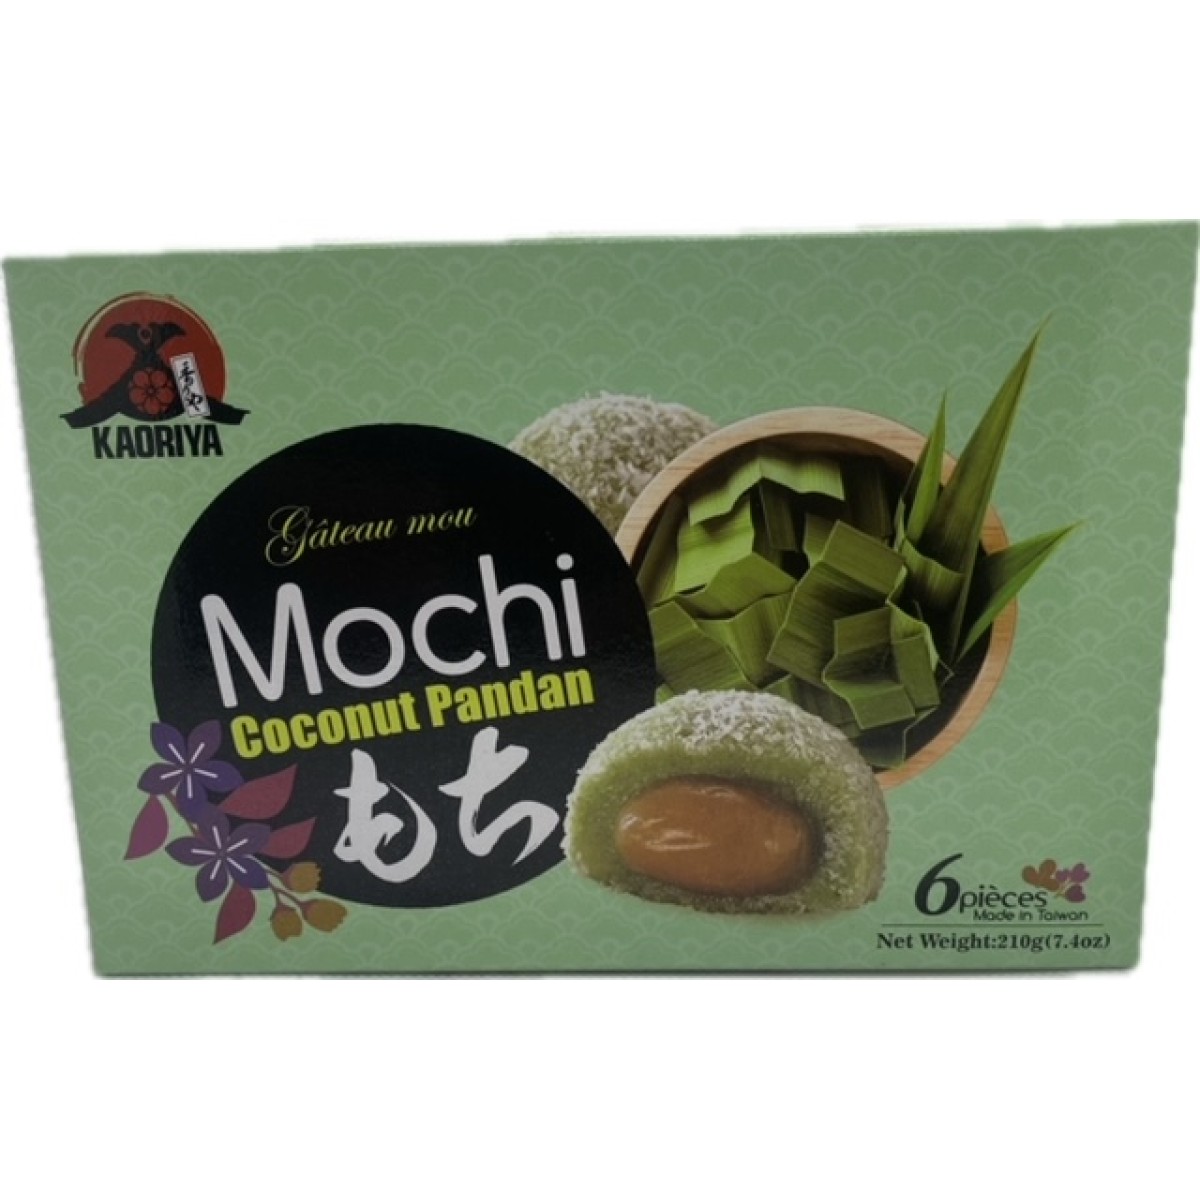 Mochi coconut pandan 210gr